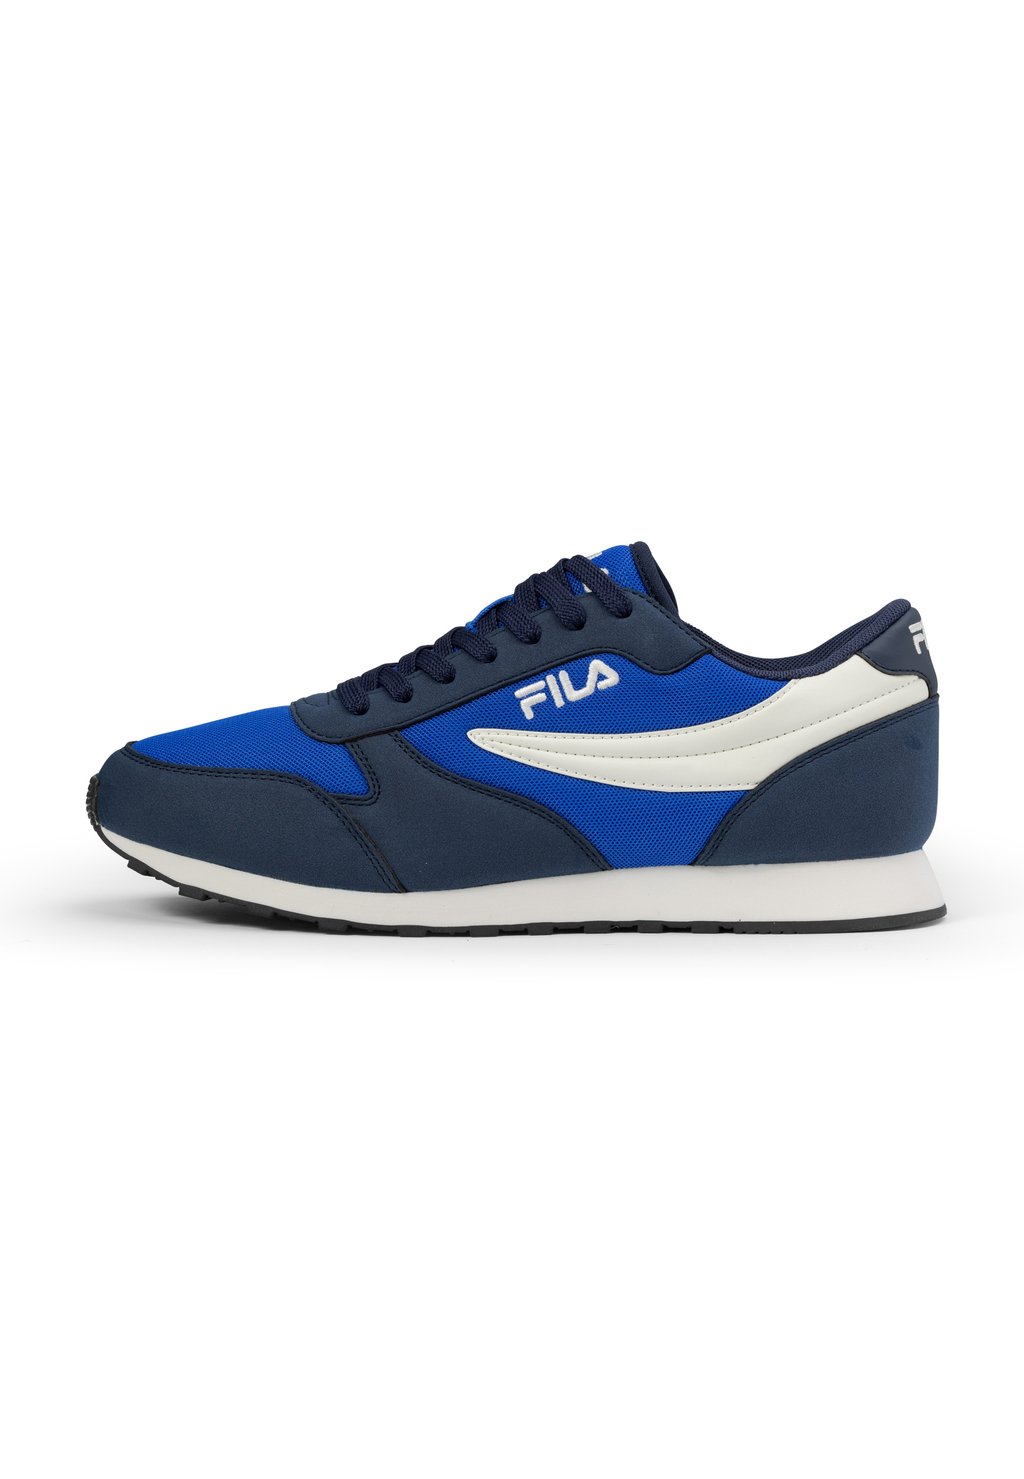 Кроссовки низкие FOOTWEAR ORBIT Fila, цвет prime blue fila navy